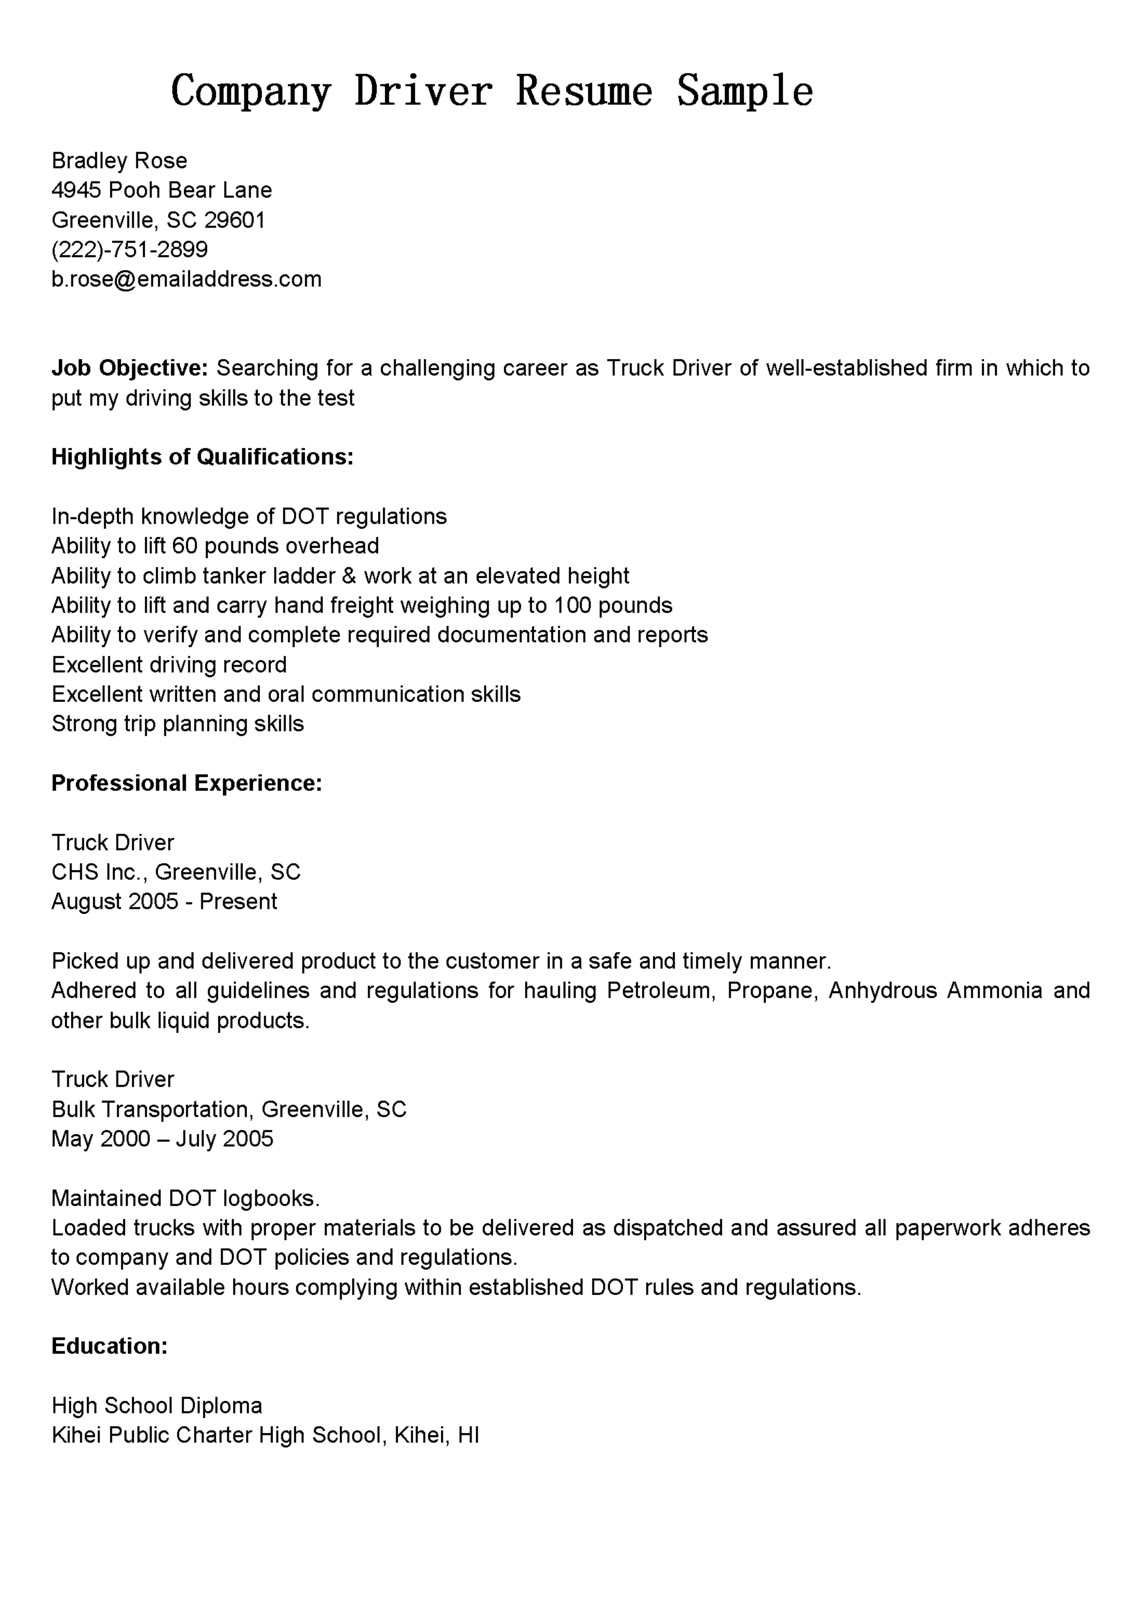 Sample resume company description